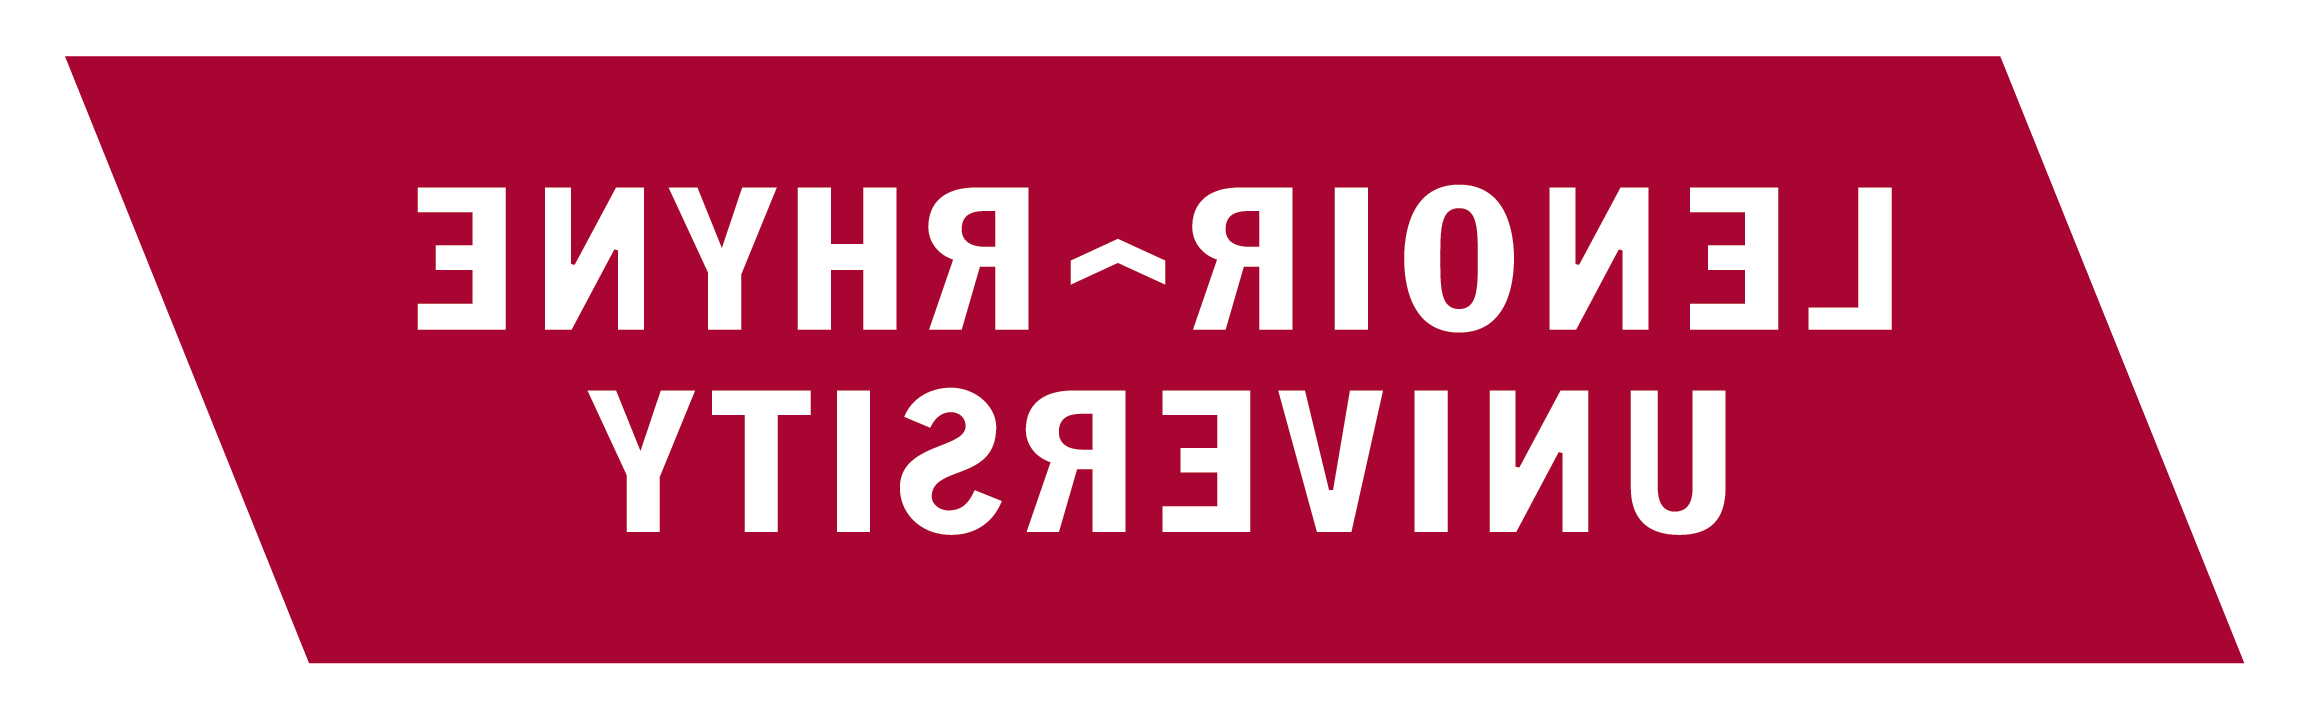 Lenoir-Rhyne University logo - white lettering over red slanted rectangle